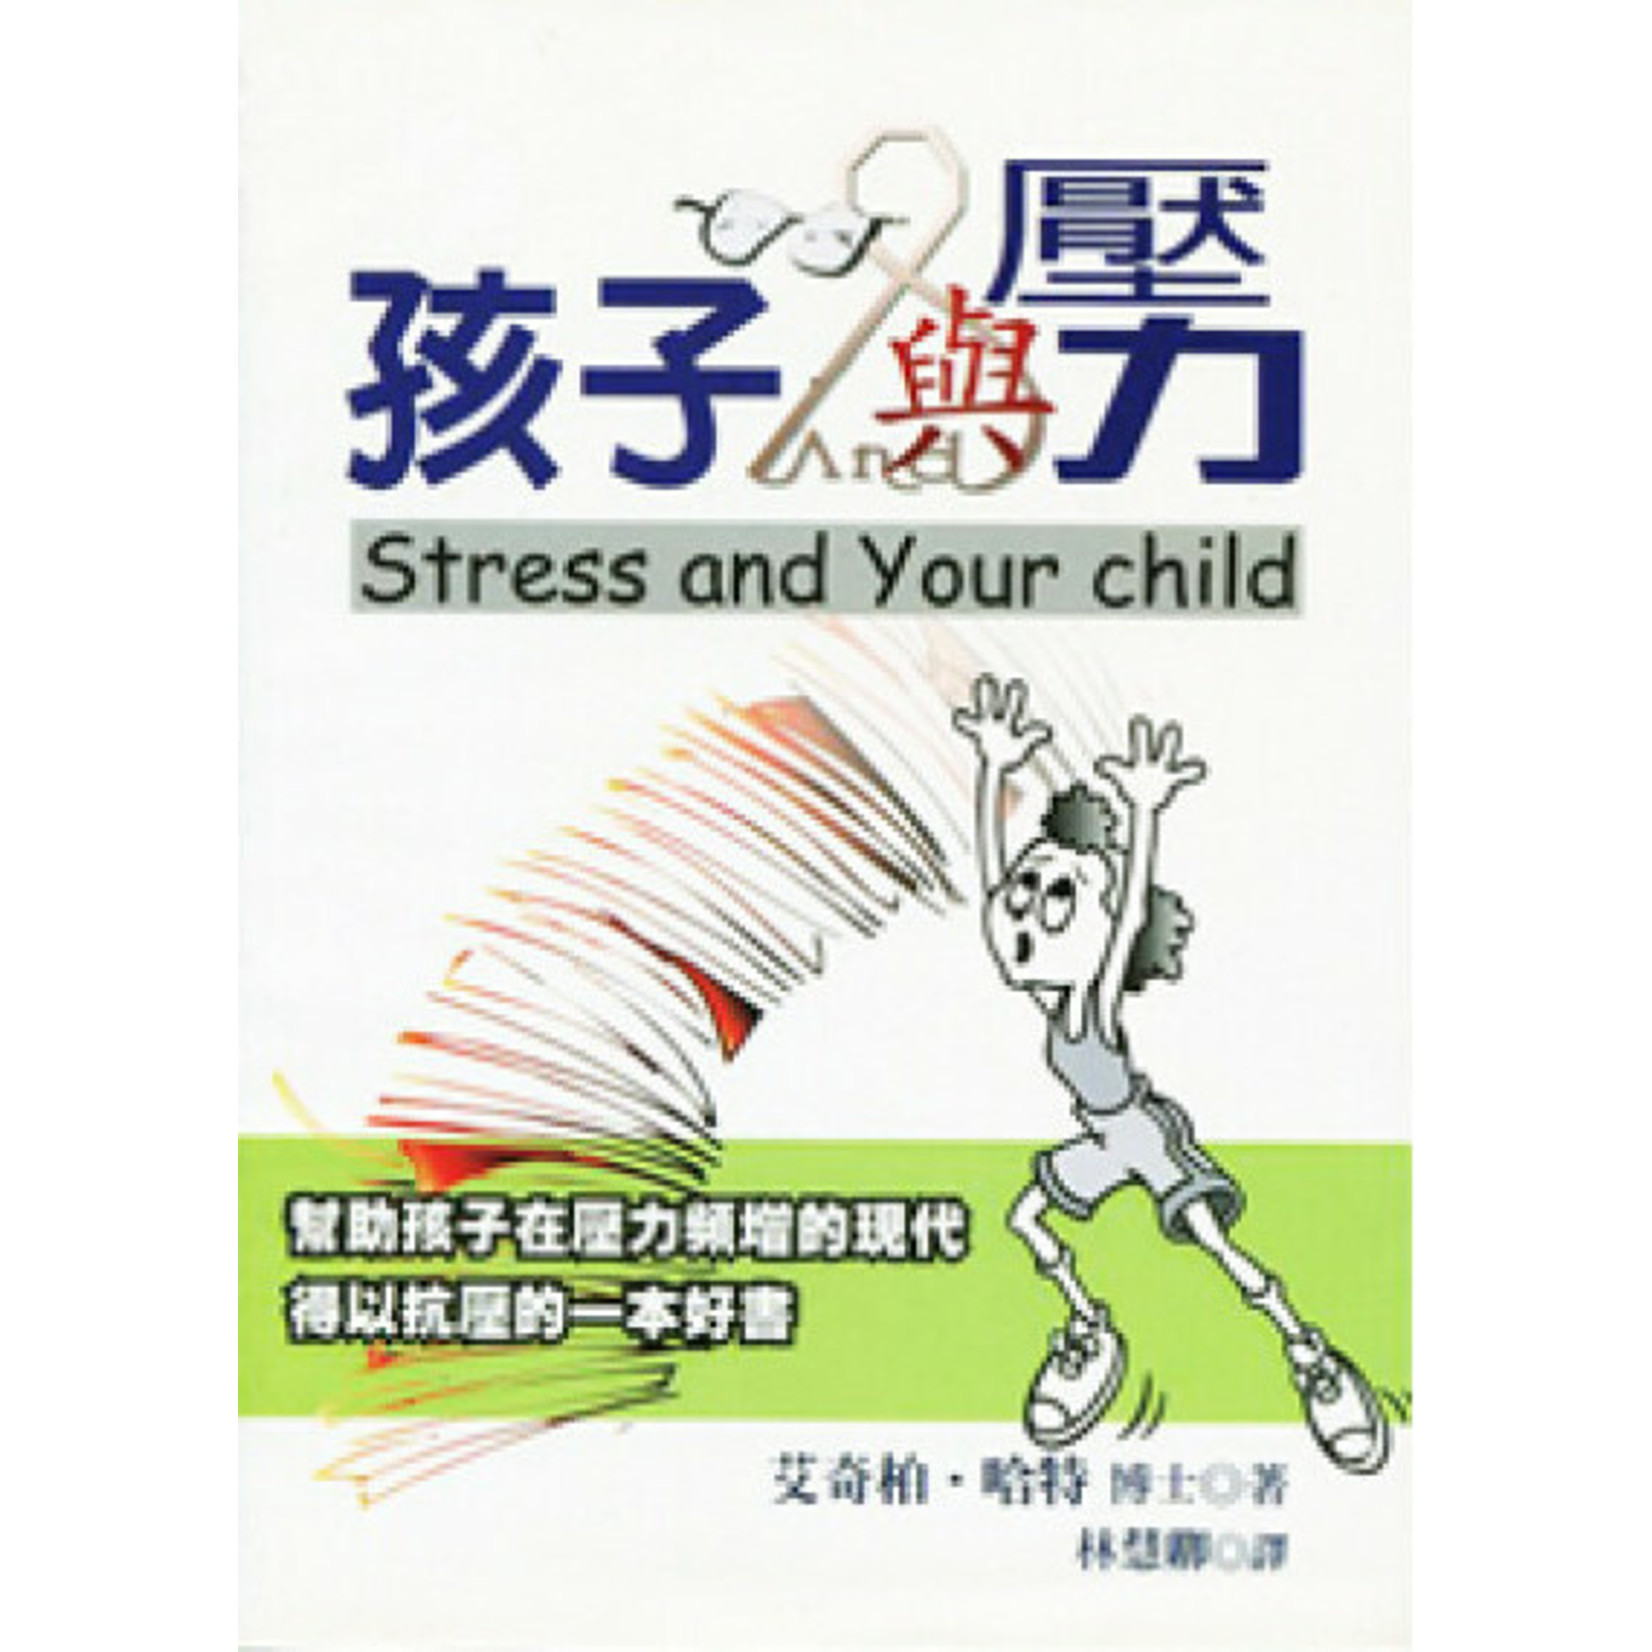 中國主日學協會 China Sunday School Association 孩子與壓力：幫助孩子抗壓 Stress and Your Child